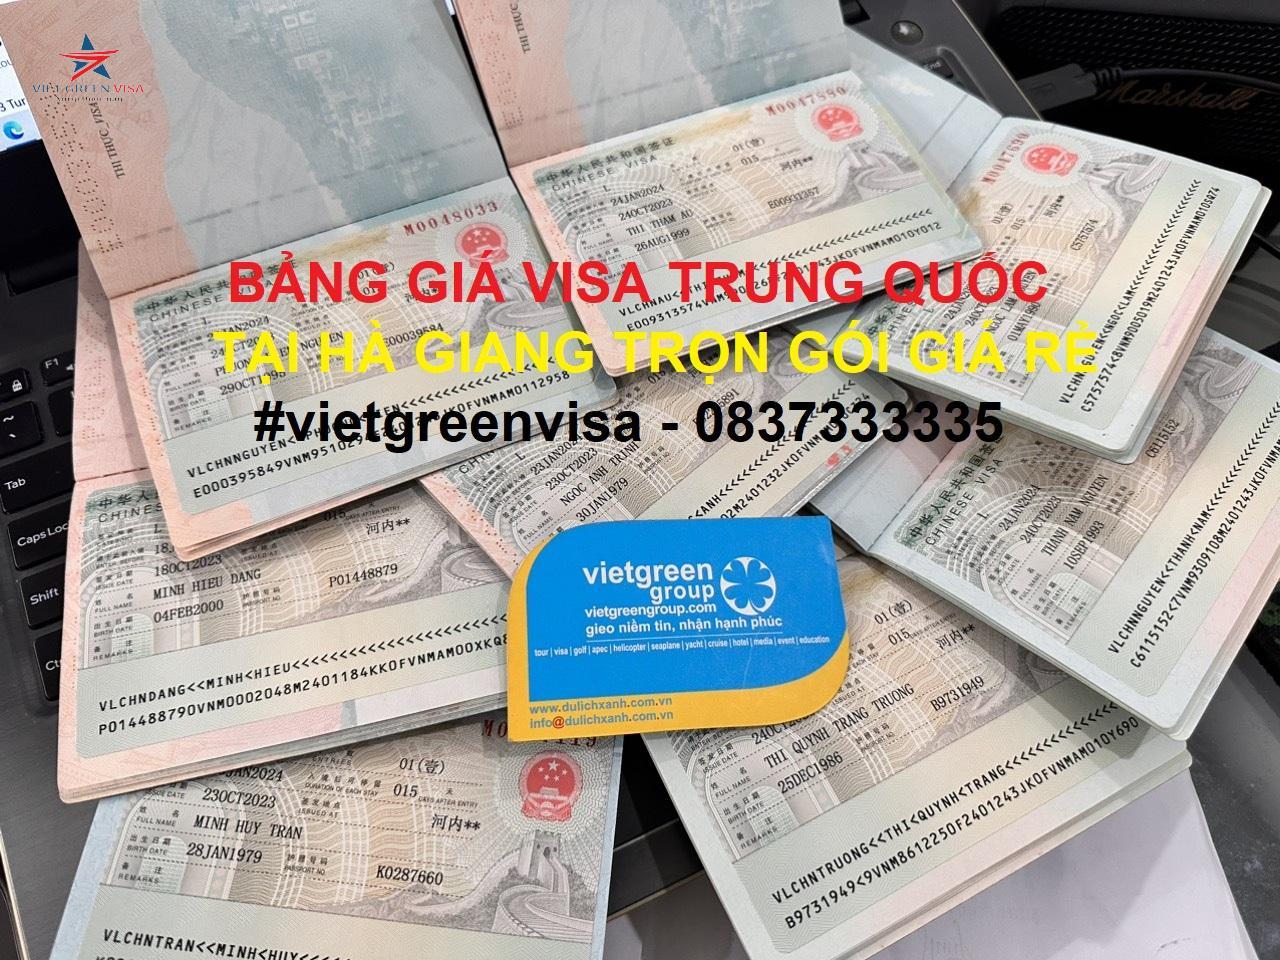 Dịch vụ xin visa Trung Quốc tại TP. Hồ Chí Minh giá rẻ